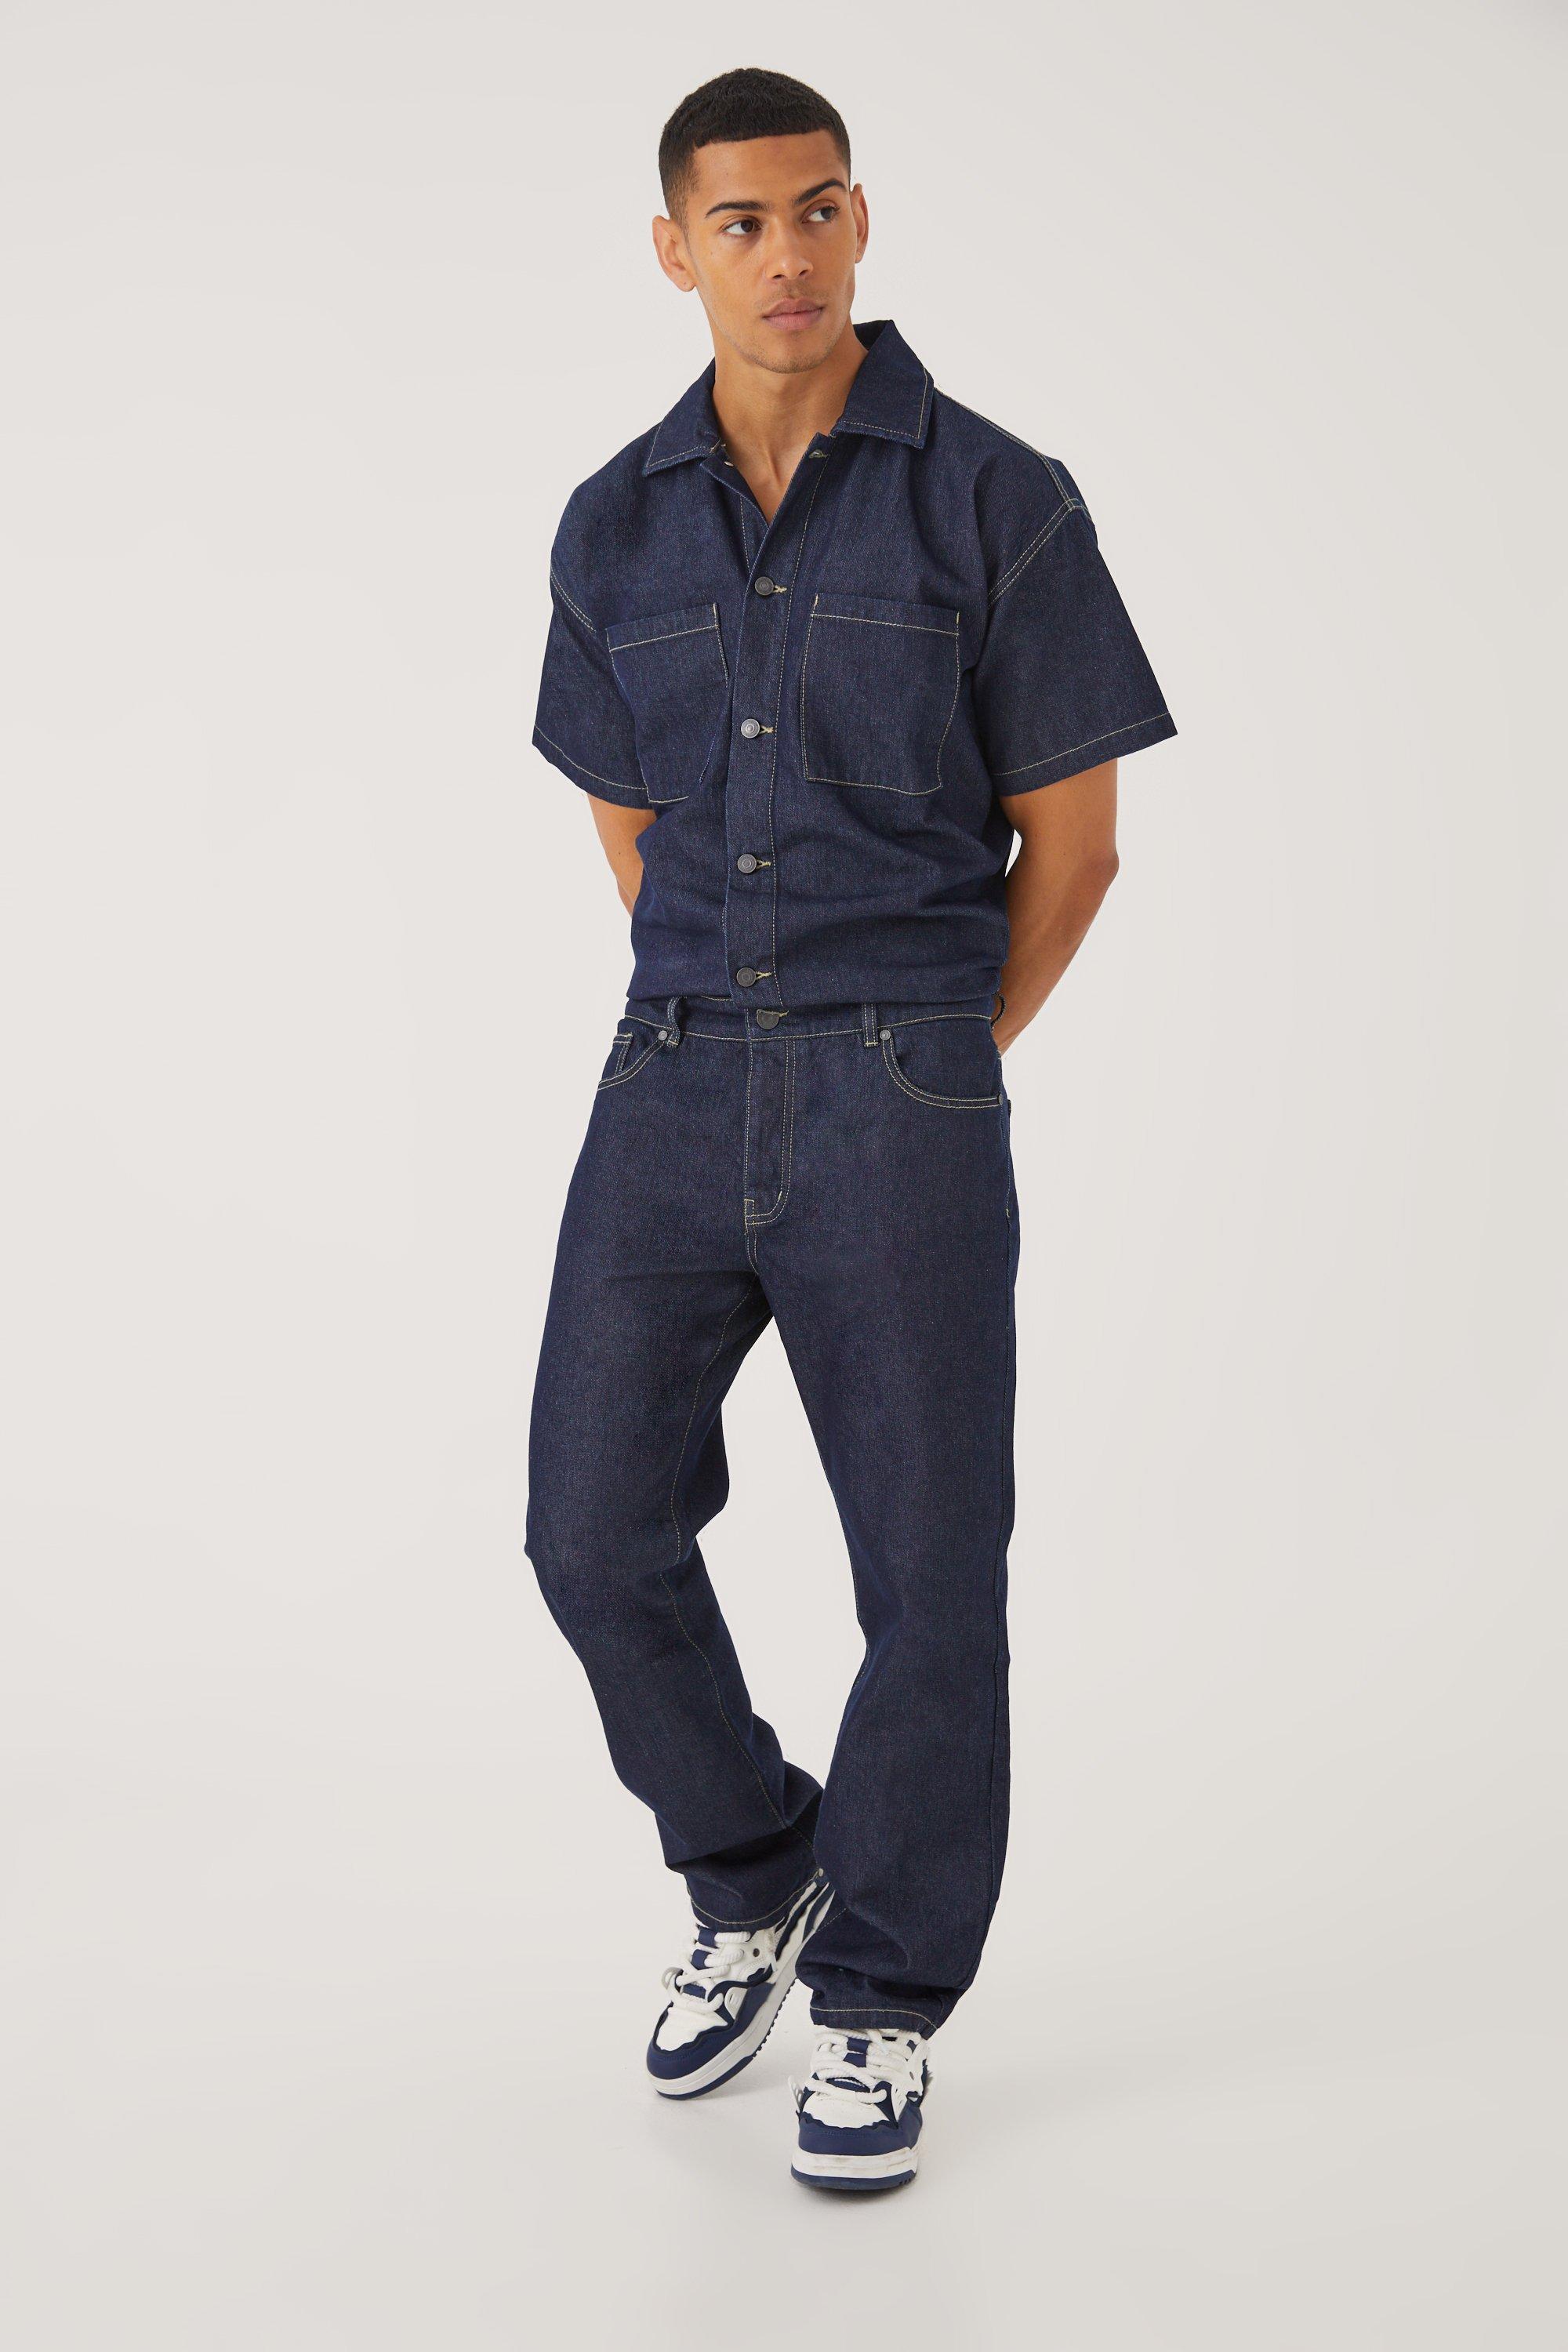 Men’s Vintage Workwear Inspired Clothing Mens Relaxed Fit Denim Jumpsuit - Blue - M $100.00 AT vintagedancer.com